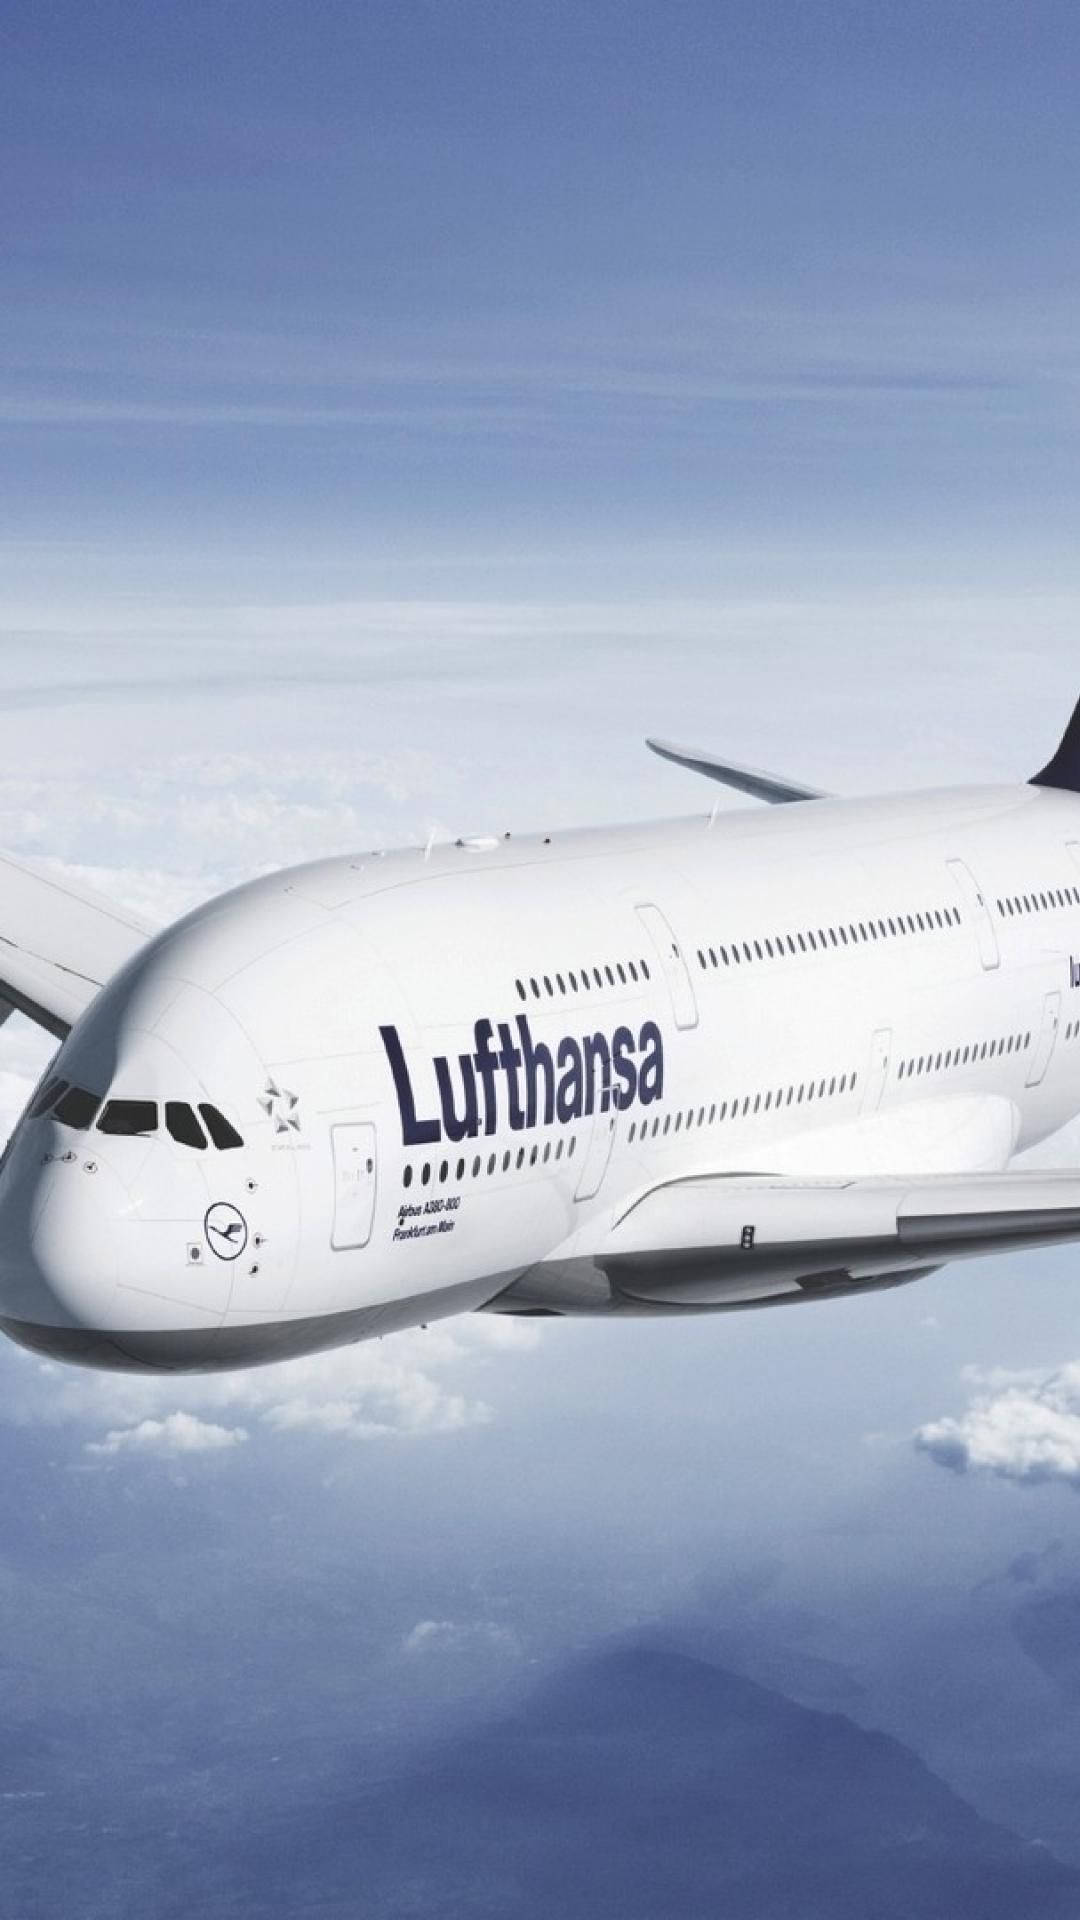 Deutsche Lufthansa Plane Flight Picture